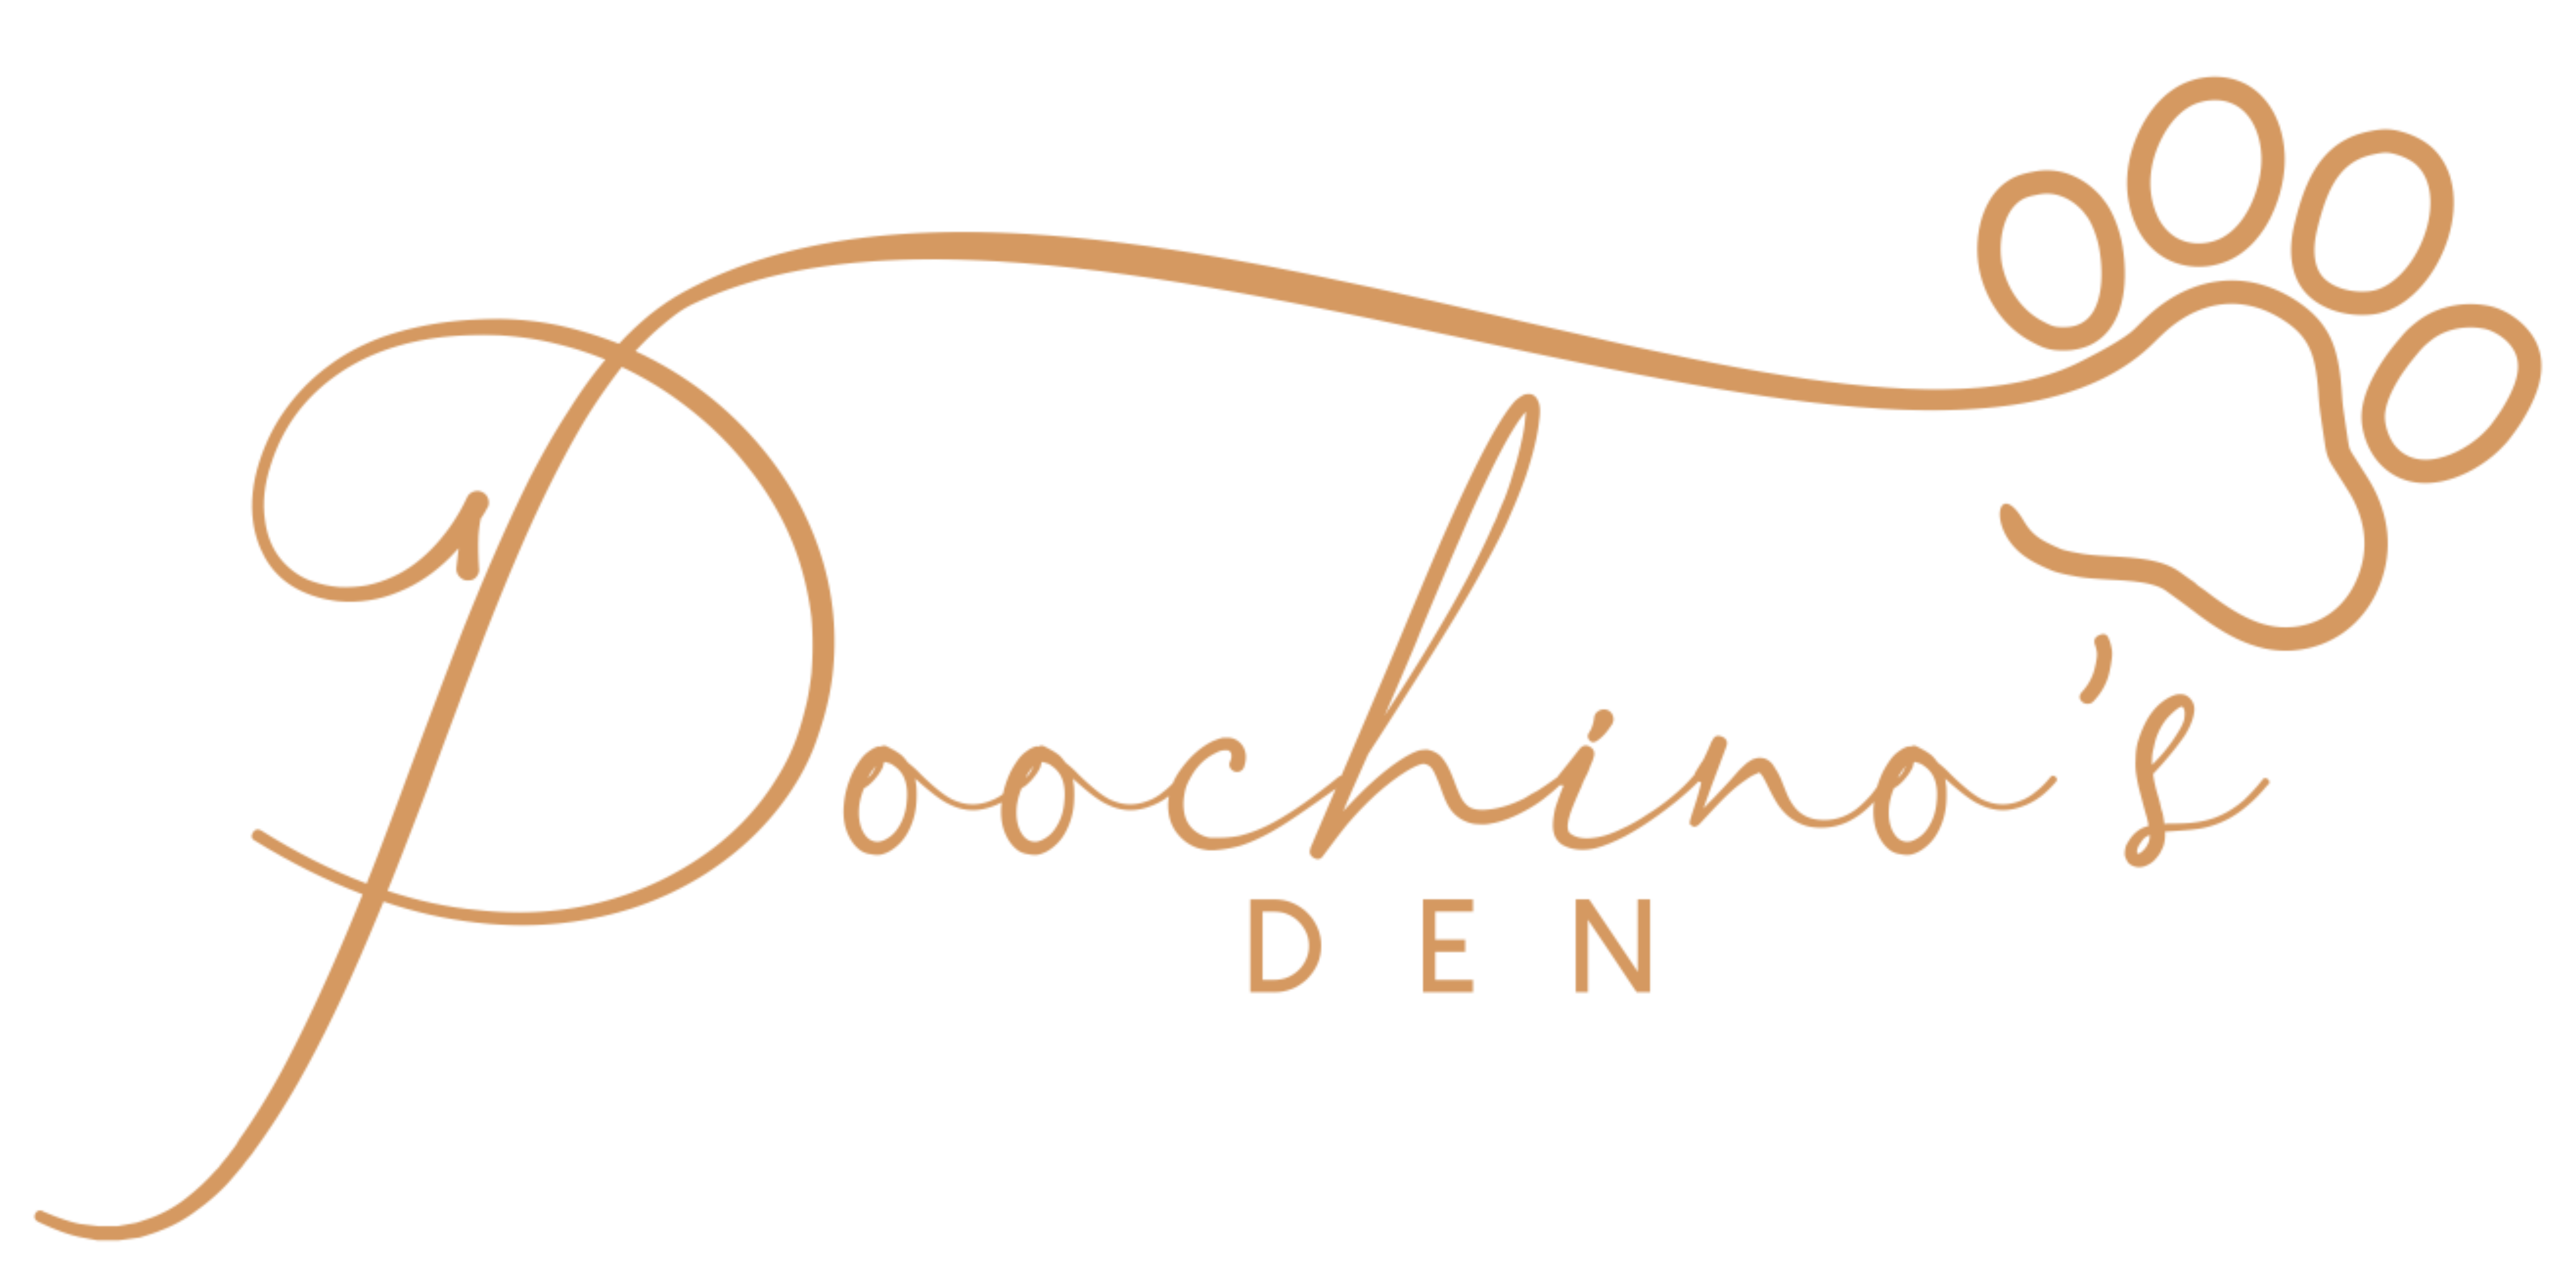 Poochino's Den